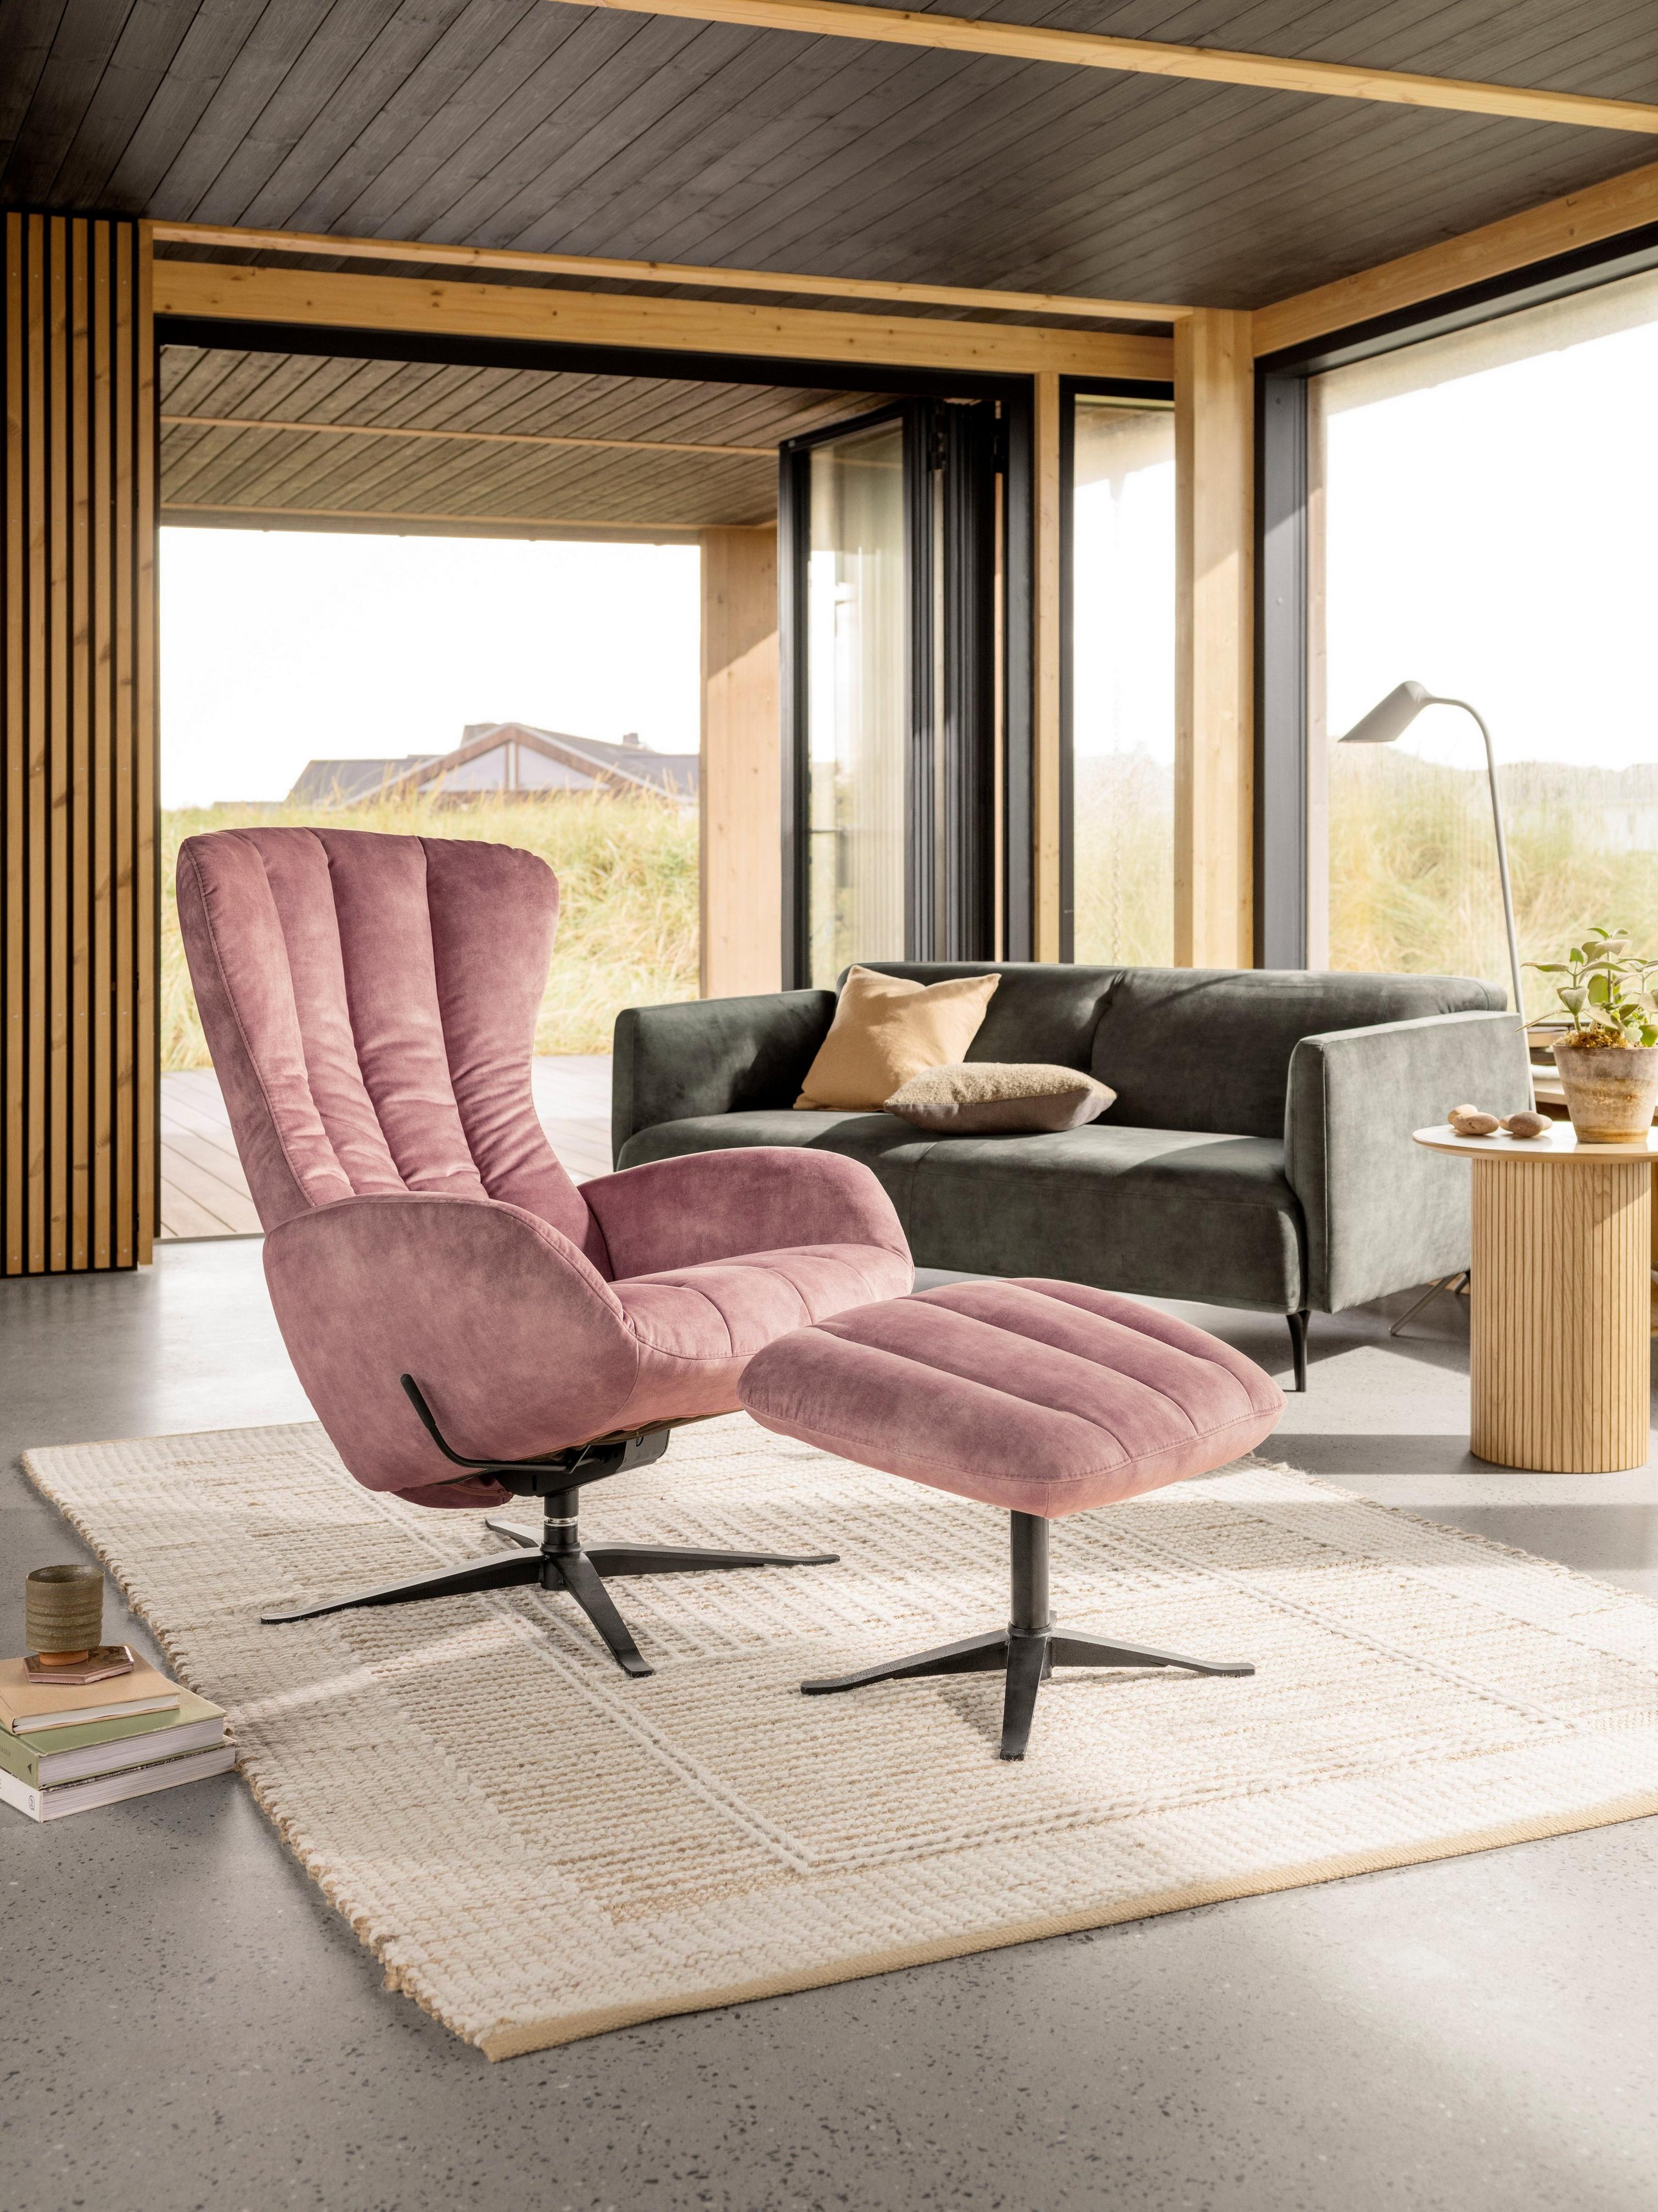 Светлая гостиная с креслом Tilburg и подставкой для ног в тон с обивкой тканью Ravello пыльно-розового цвета.